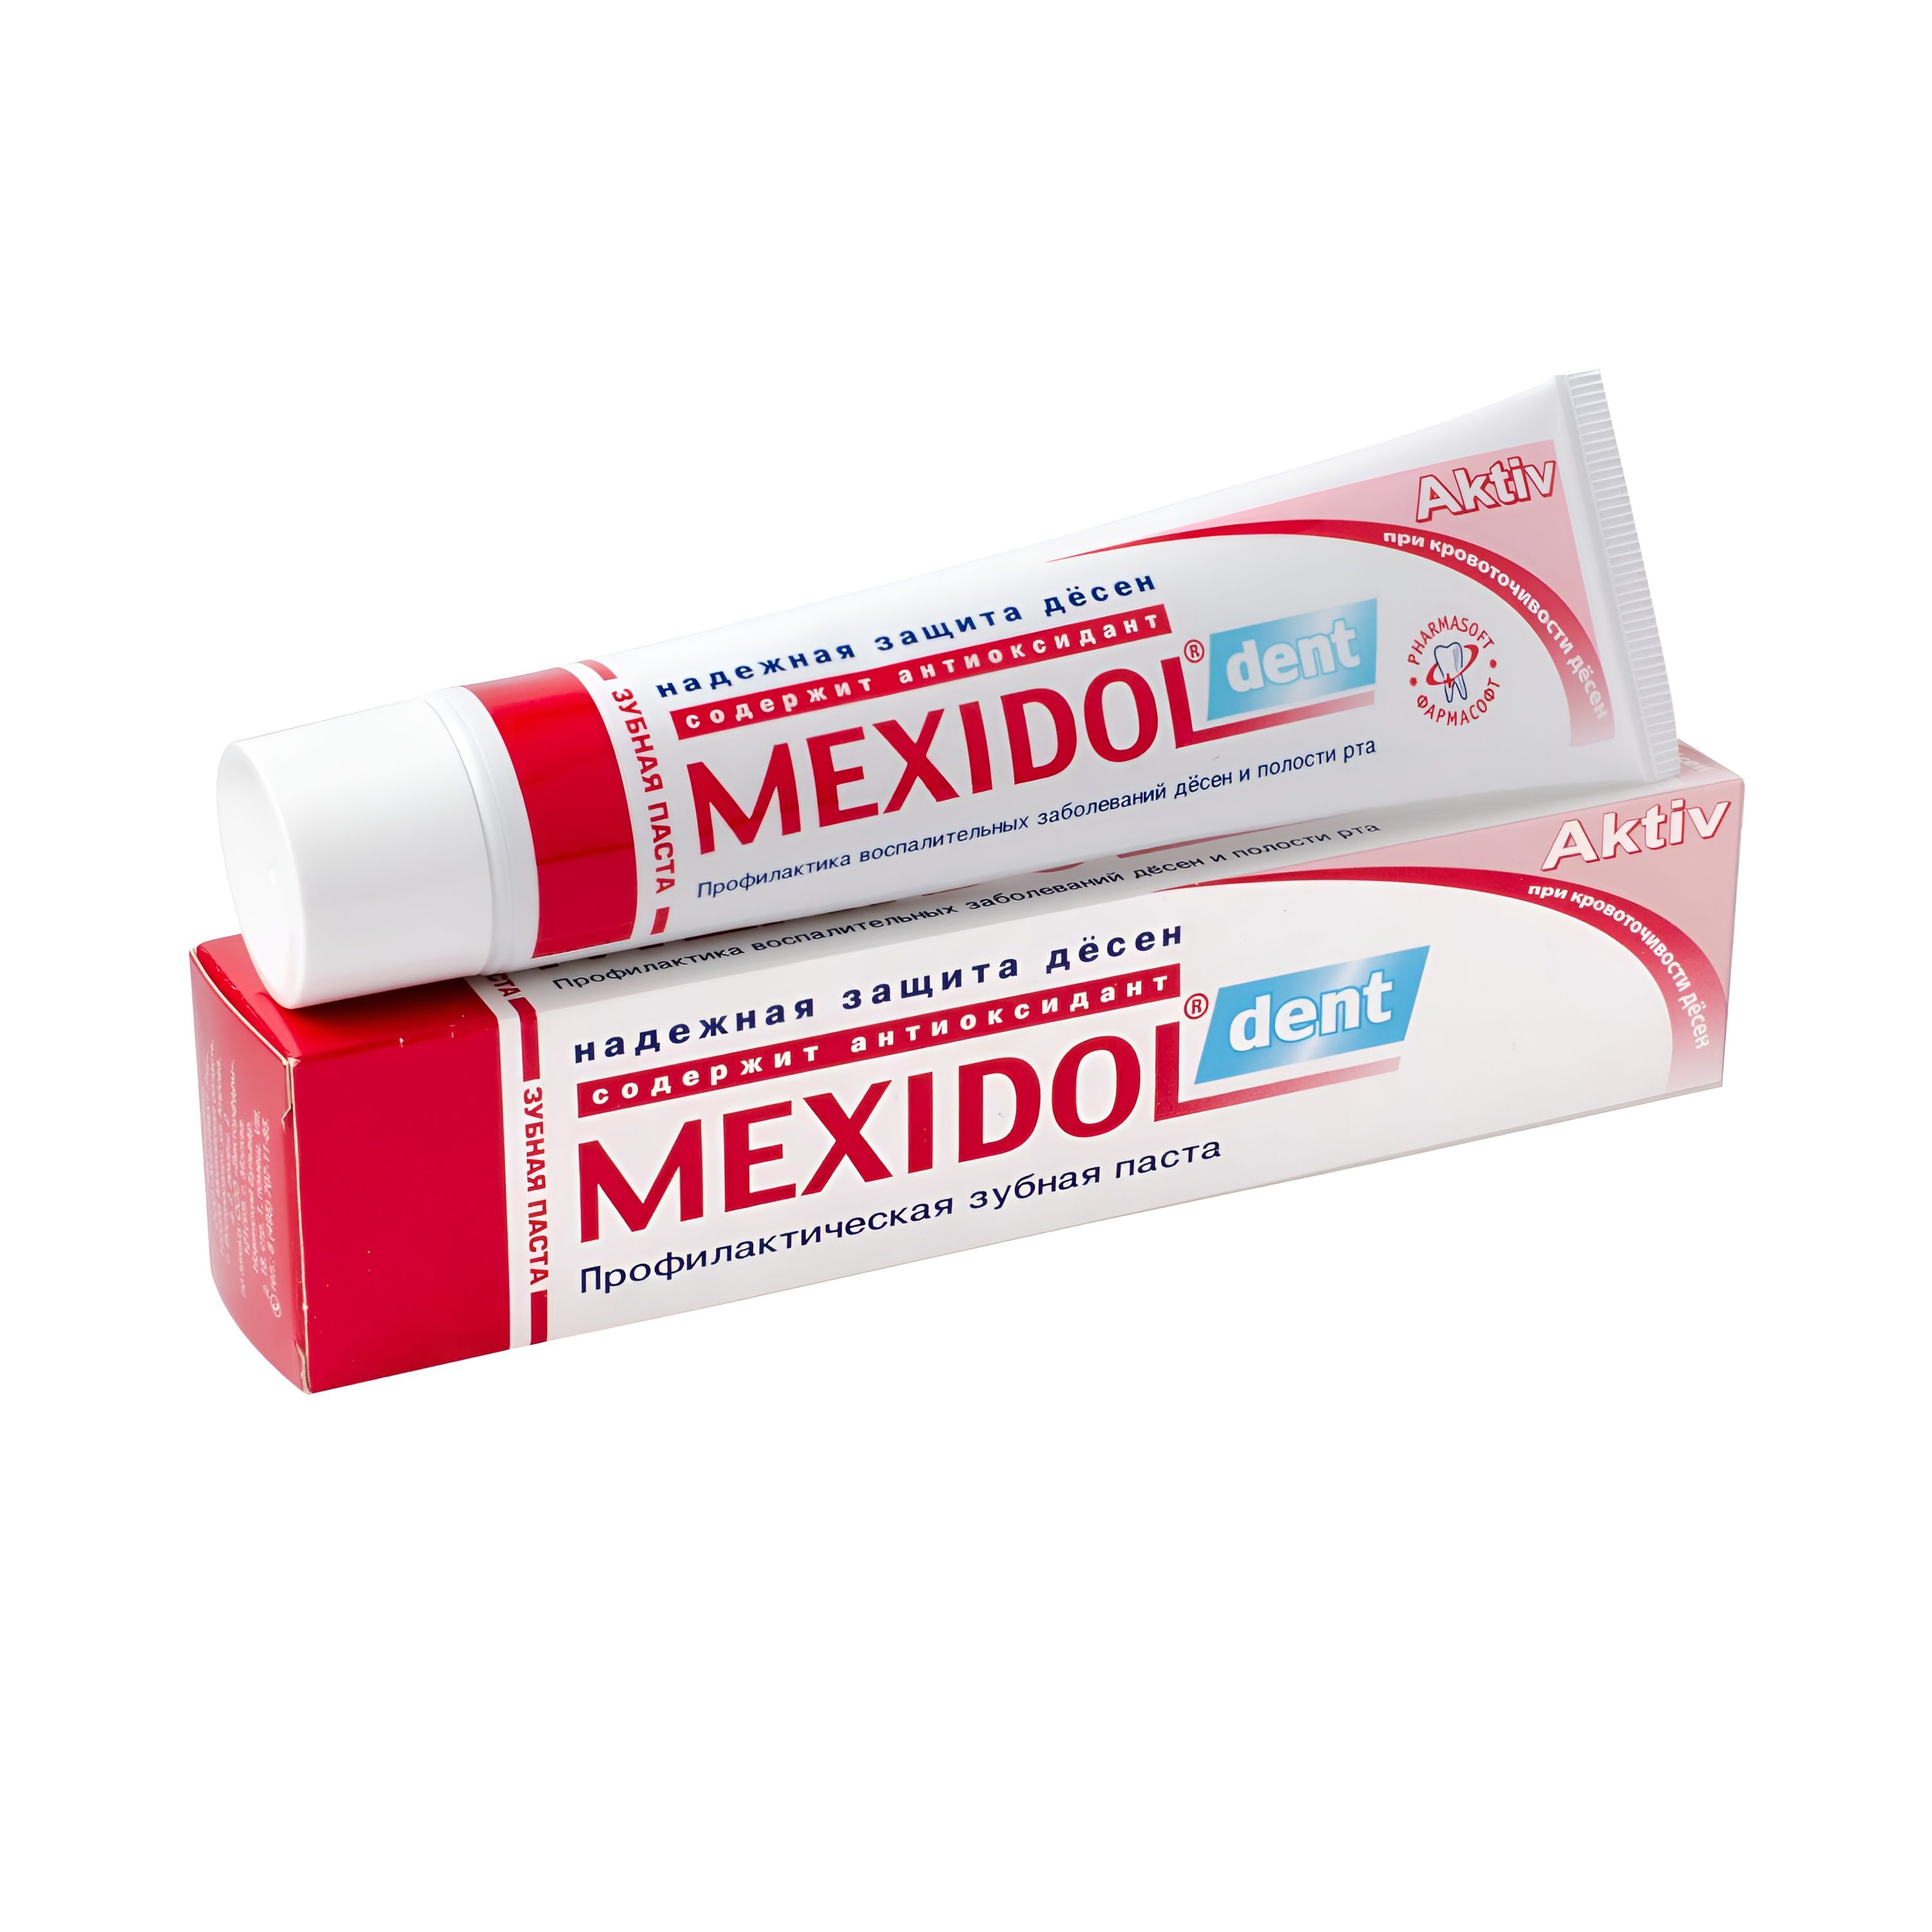 Мексидол Дент Актив, зубная паста, 65 г мексидол дент фито зубная паста 65 г